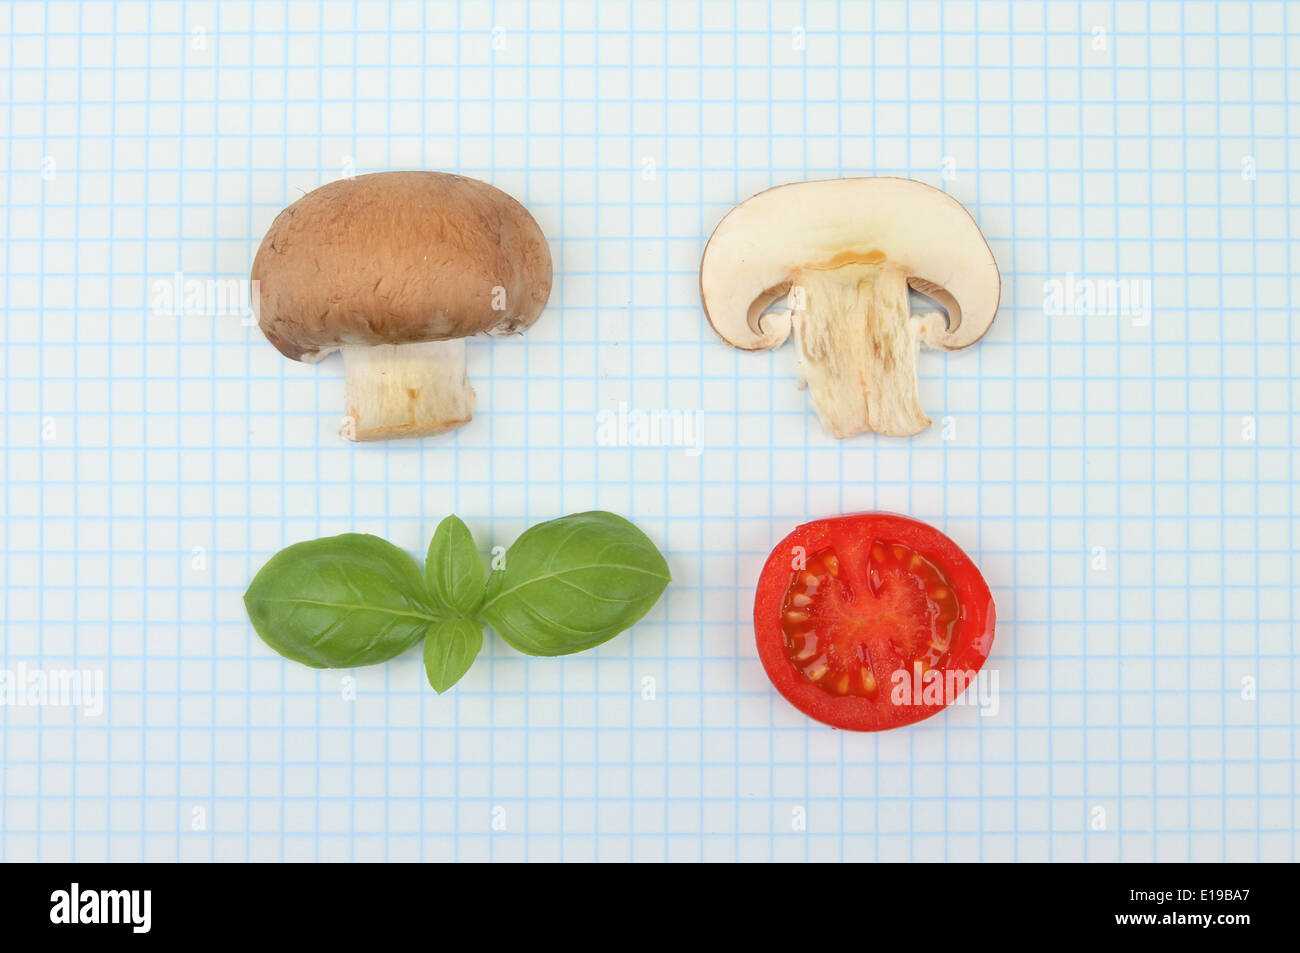 Scienza alimentare concetto, funghi, basilico e pomodoro su un foglio di carta millimetrata Foto Stock